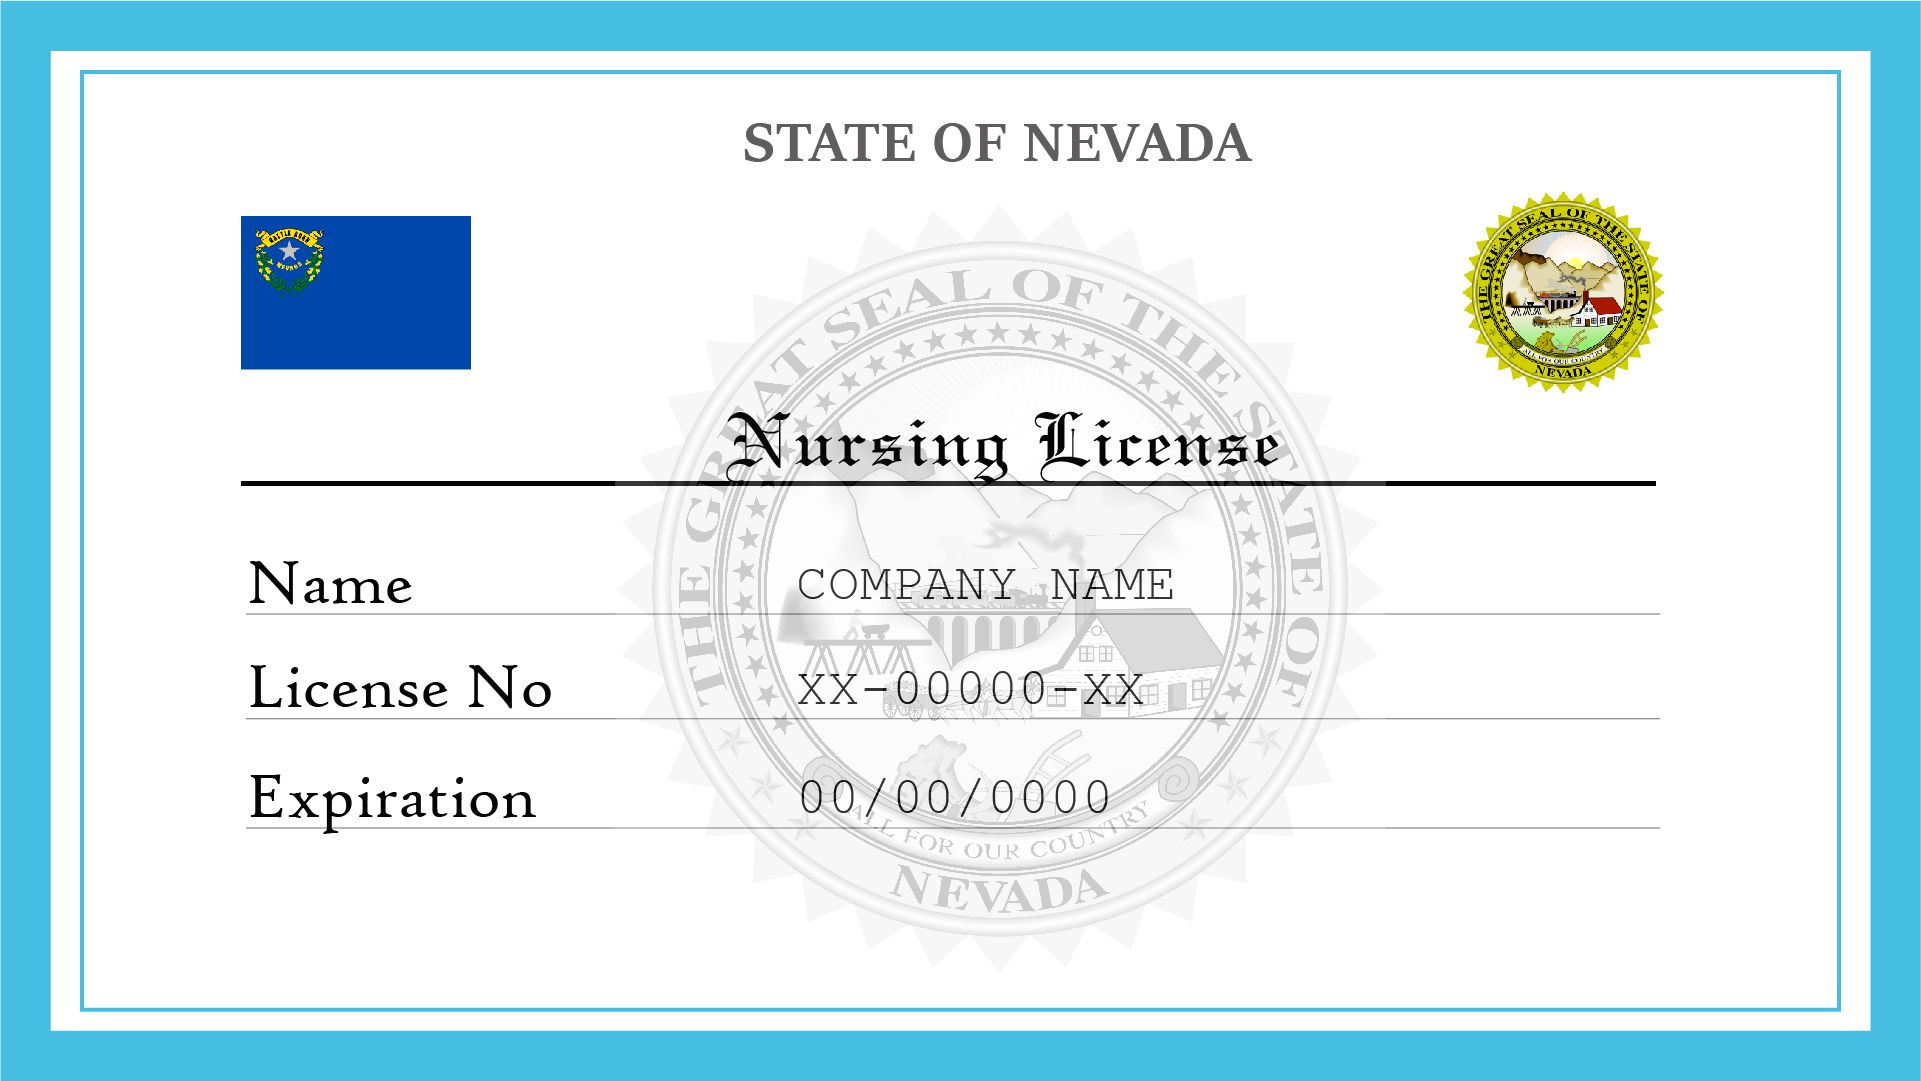 Nevada Nursing License 842d28b27f 